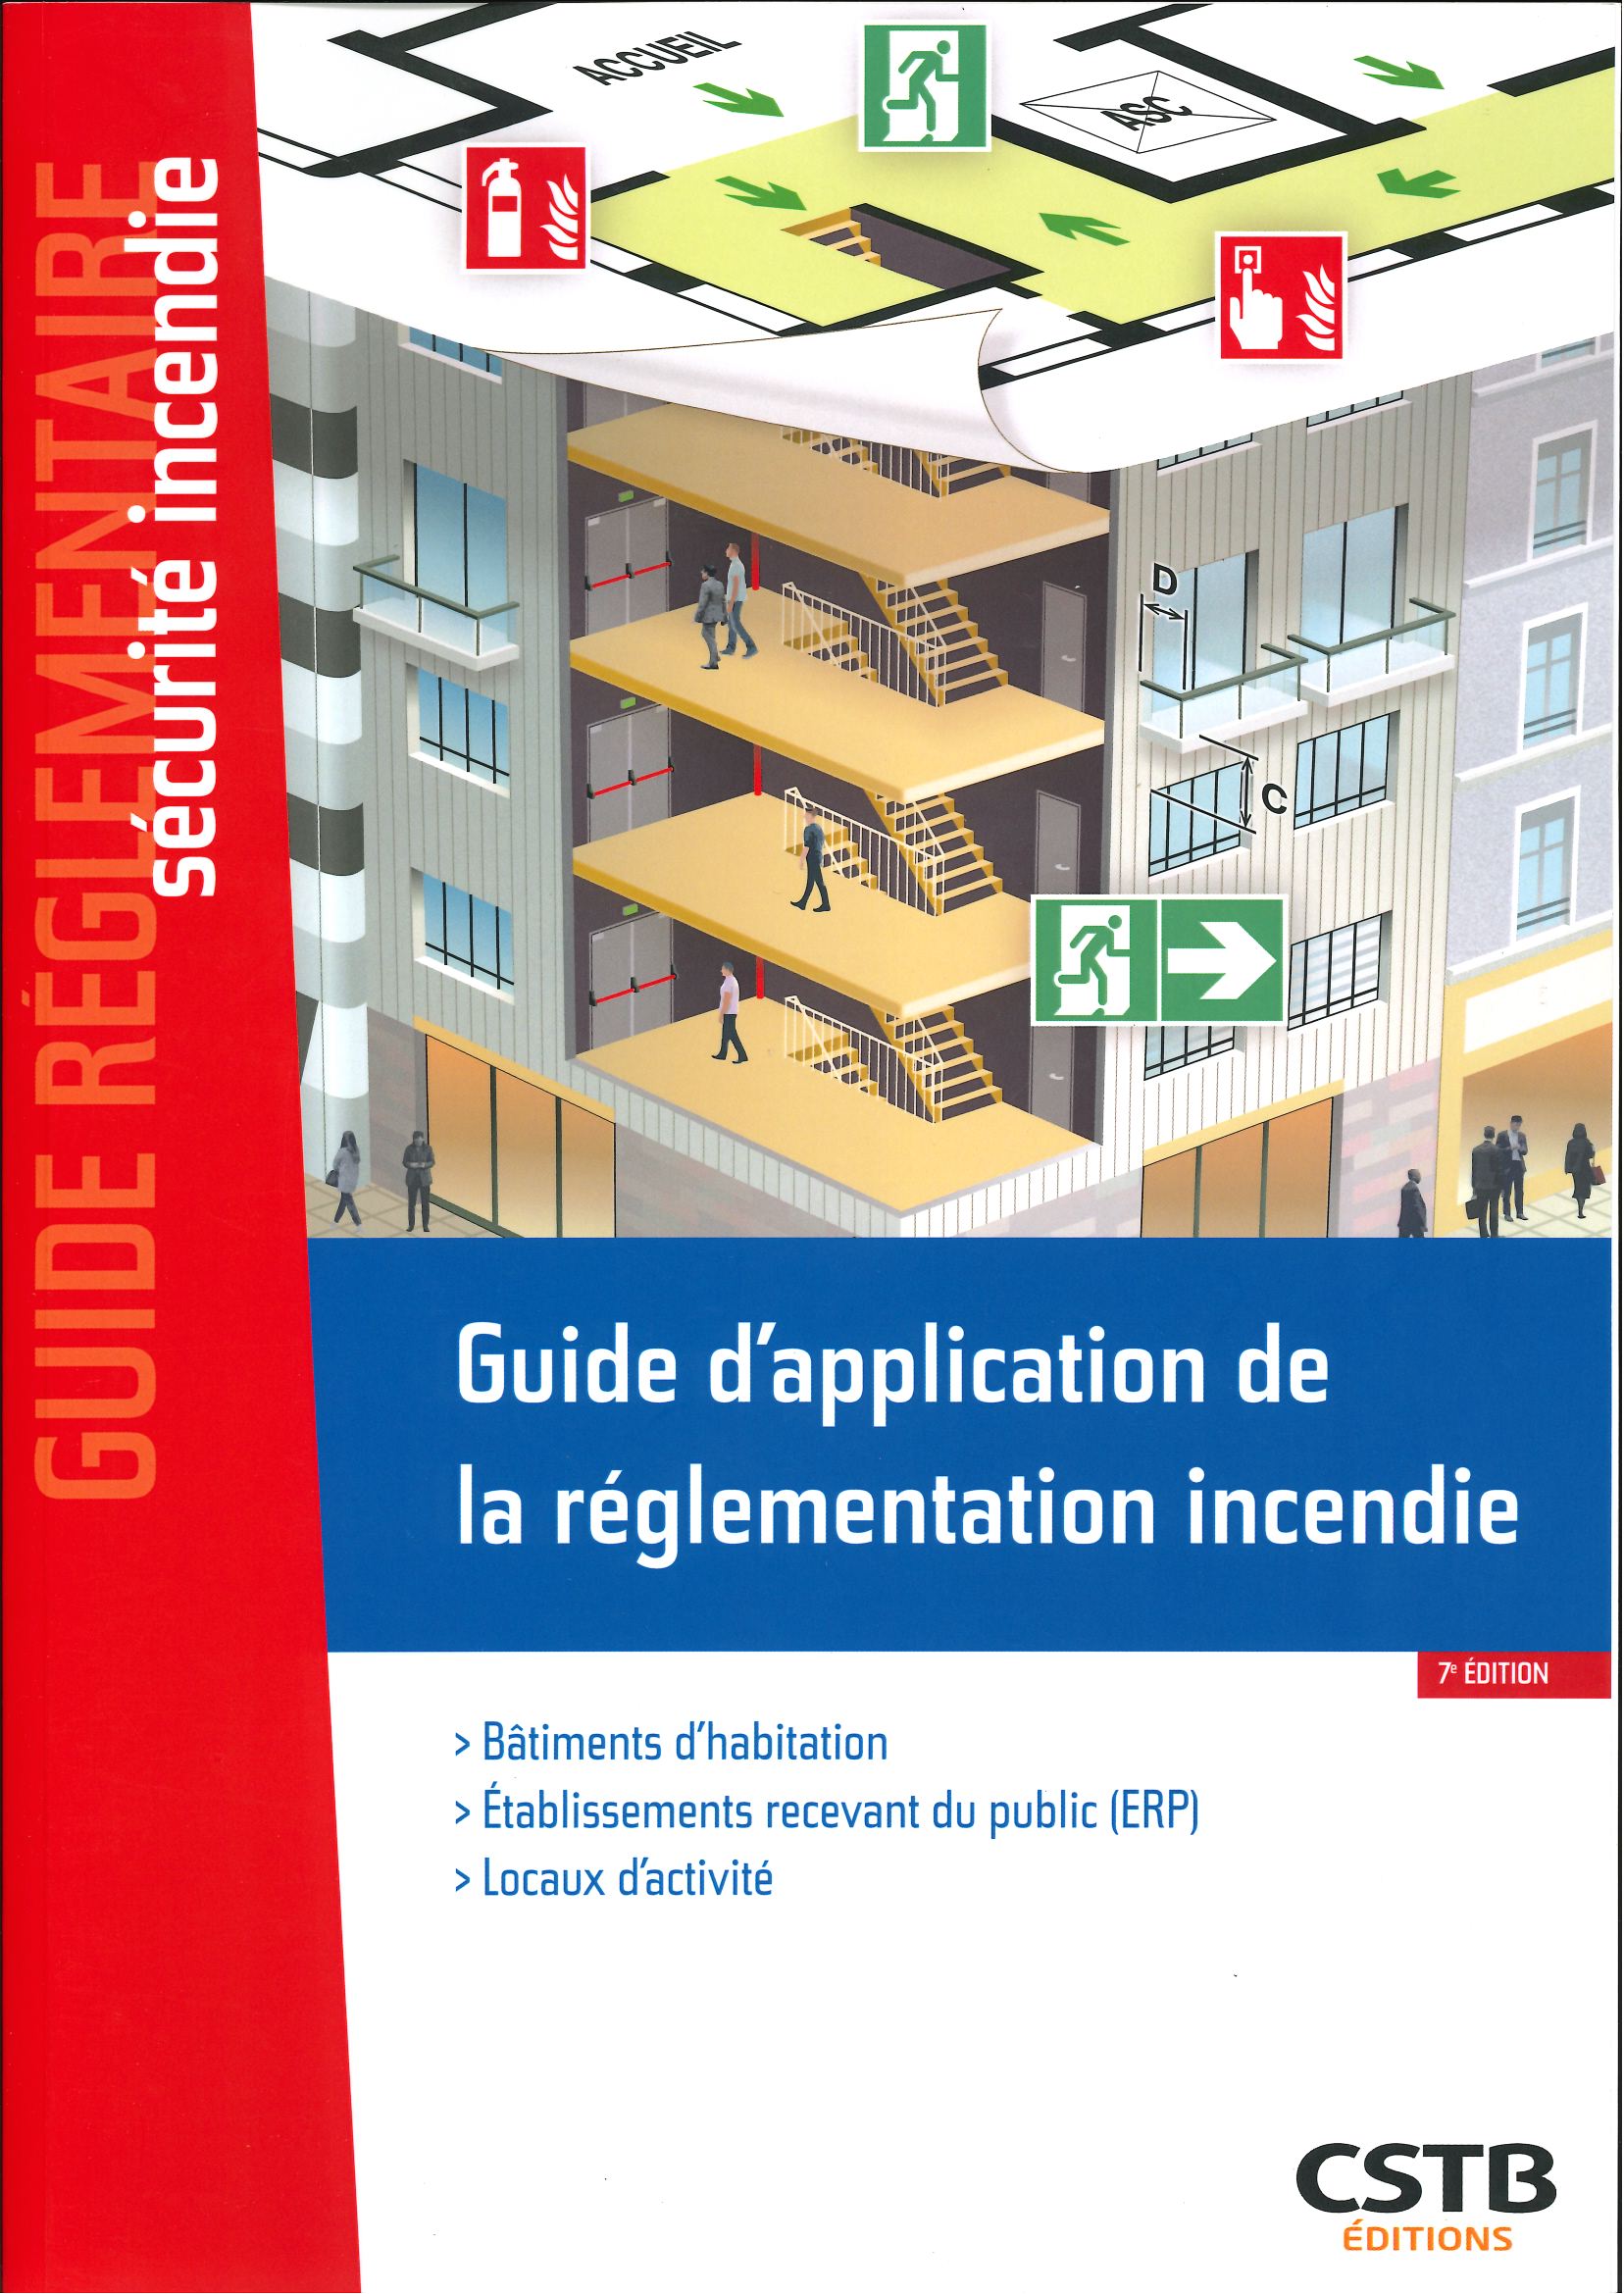 Guide d'application de la réglementation incendie: Bâtiments d'habitation - Etablissements recevant du public (ERP) - Locaux d'activité